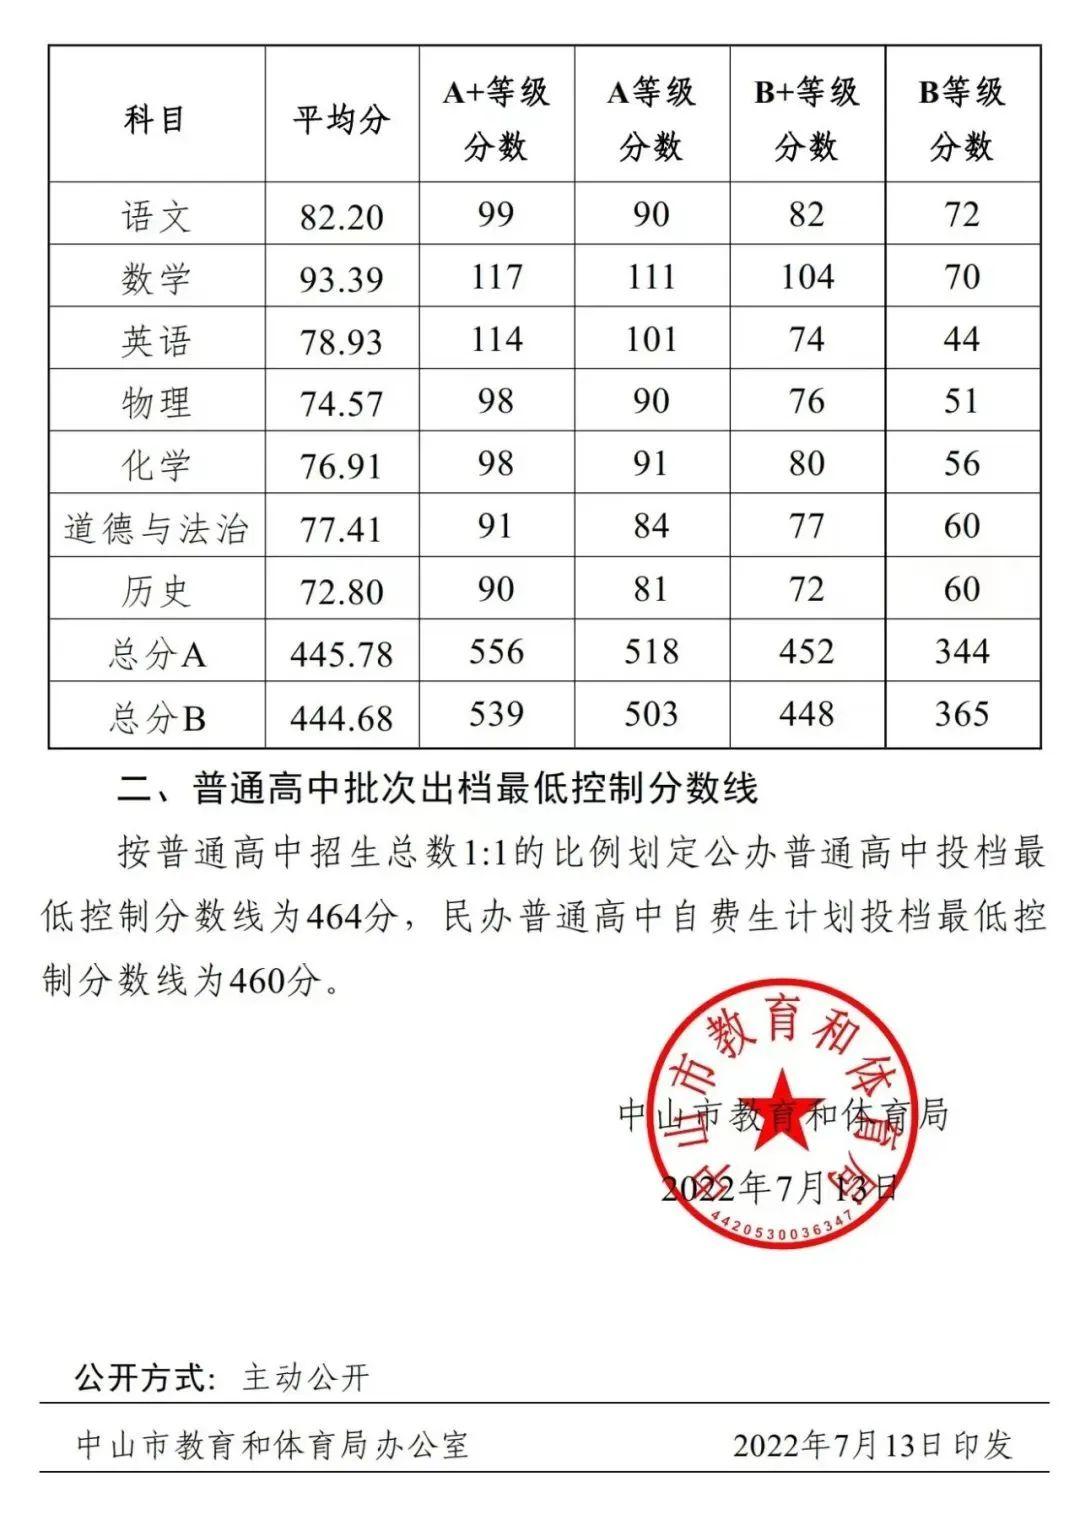 分数线及录取结果目前广州,珠海,河源,梅州惠州,东莞,阳江,清远韶关